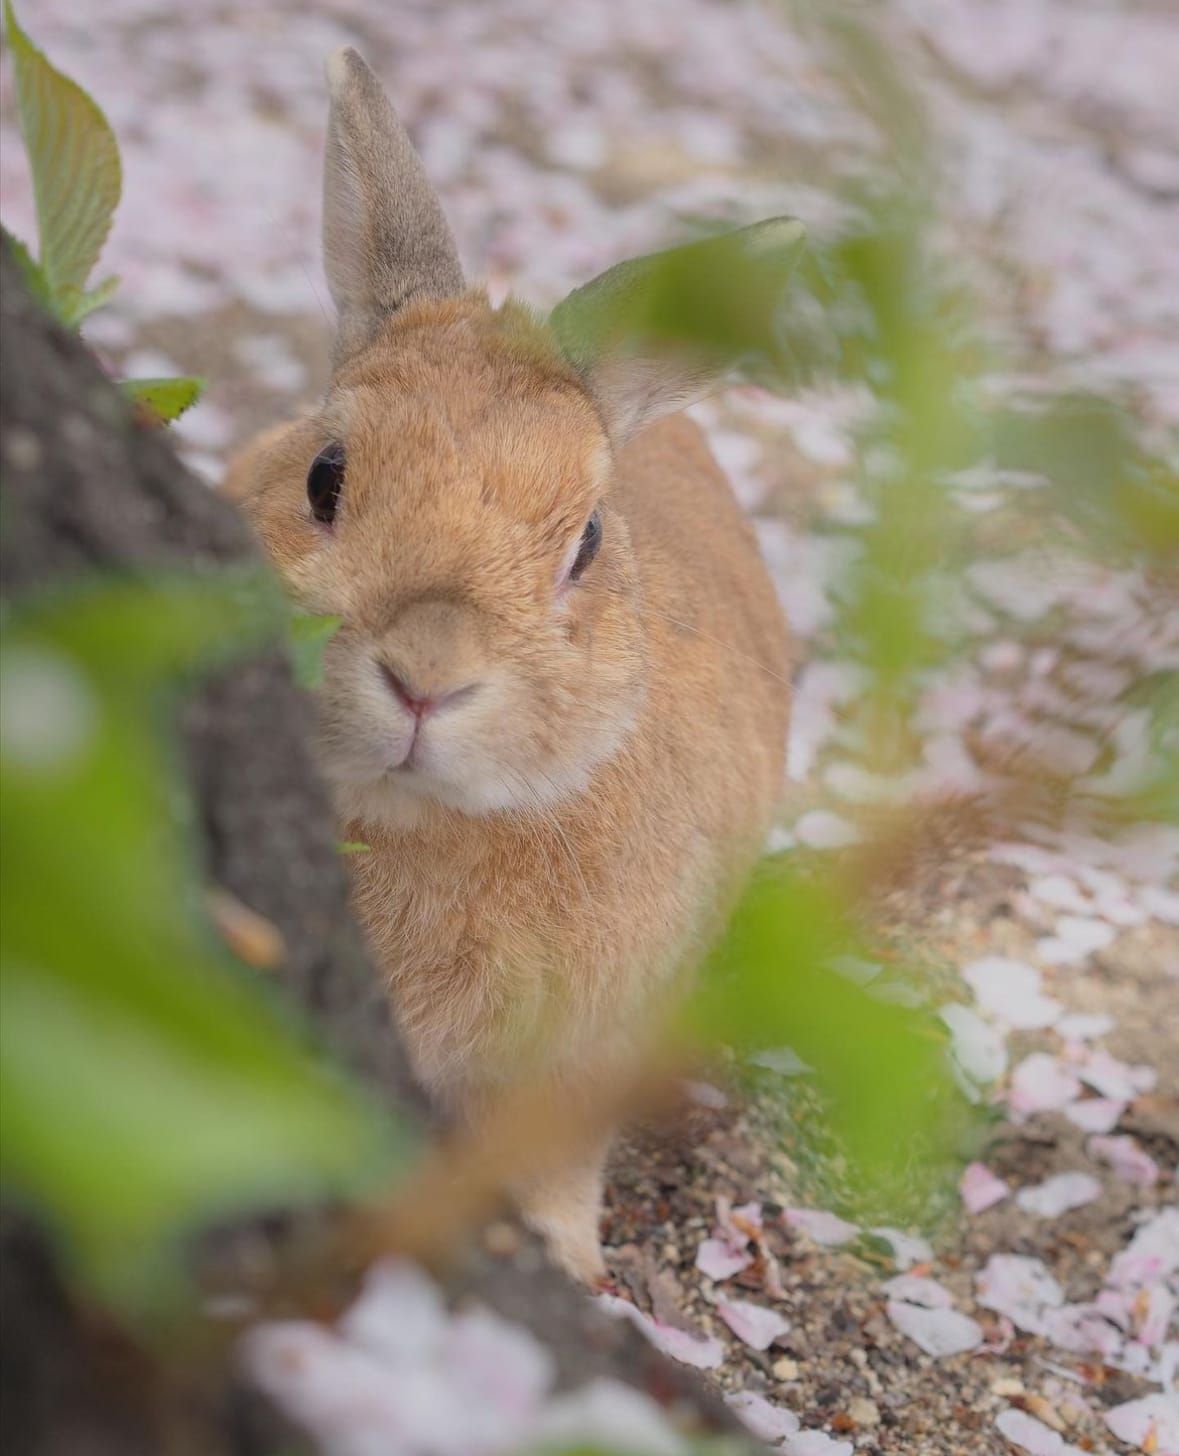 ภาพถ่ายกระต่าย กาตุ่ย น่ารัก usausausa1201